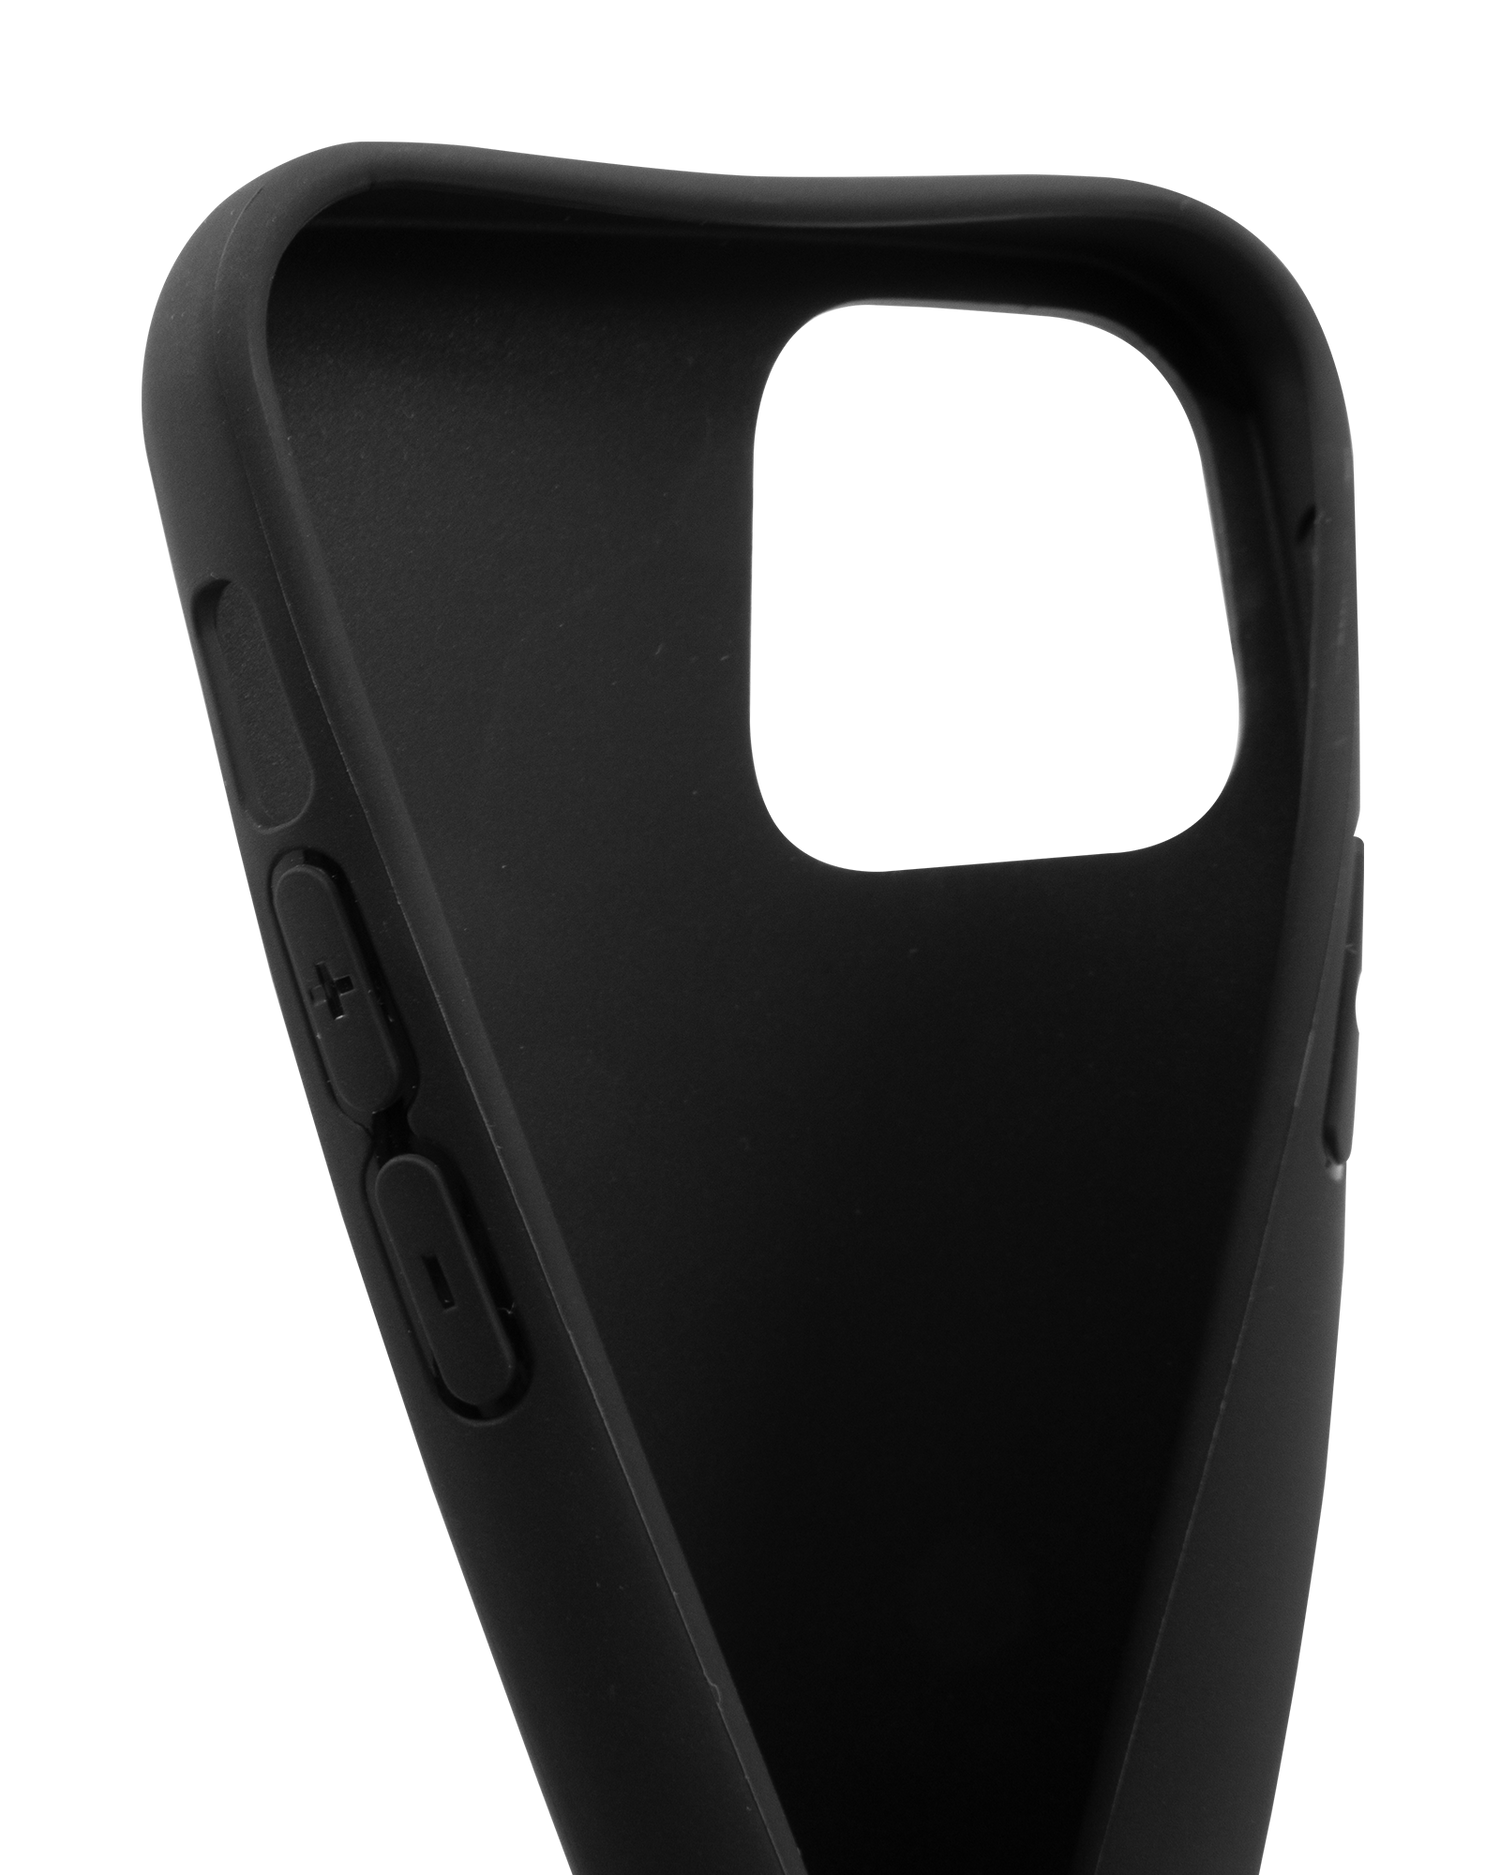 Schwarze Silikon Handyhülle für iPhone 12 & iPhone 12 Pro: Sehr elastisch